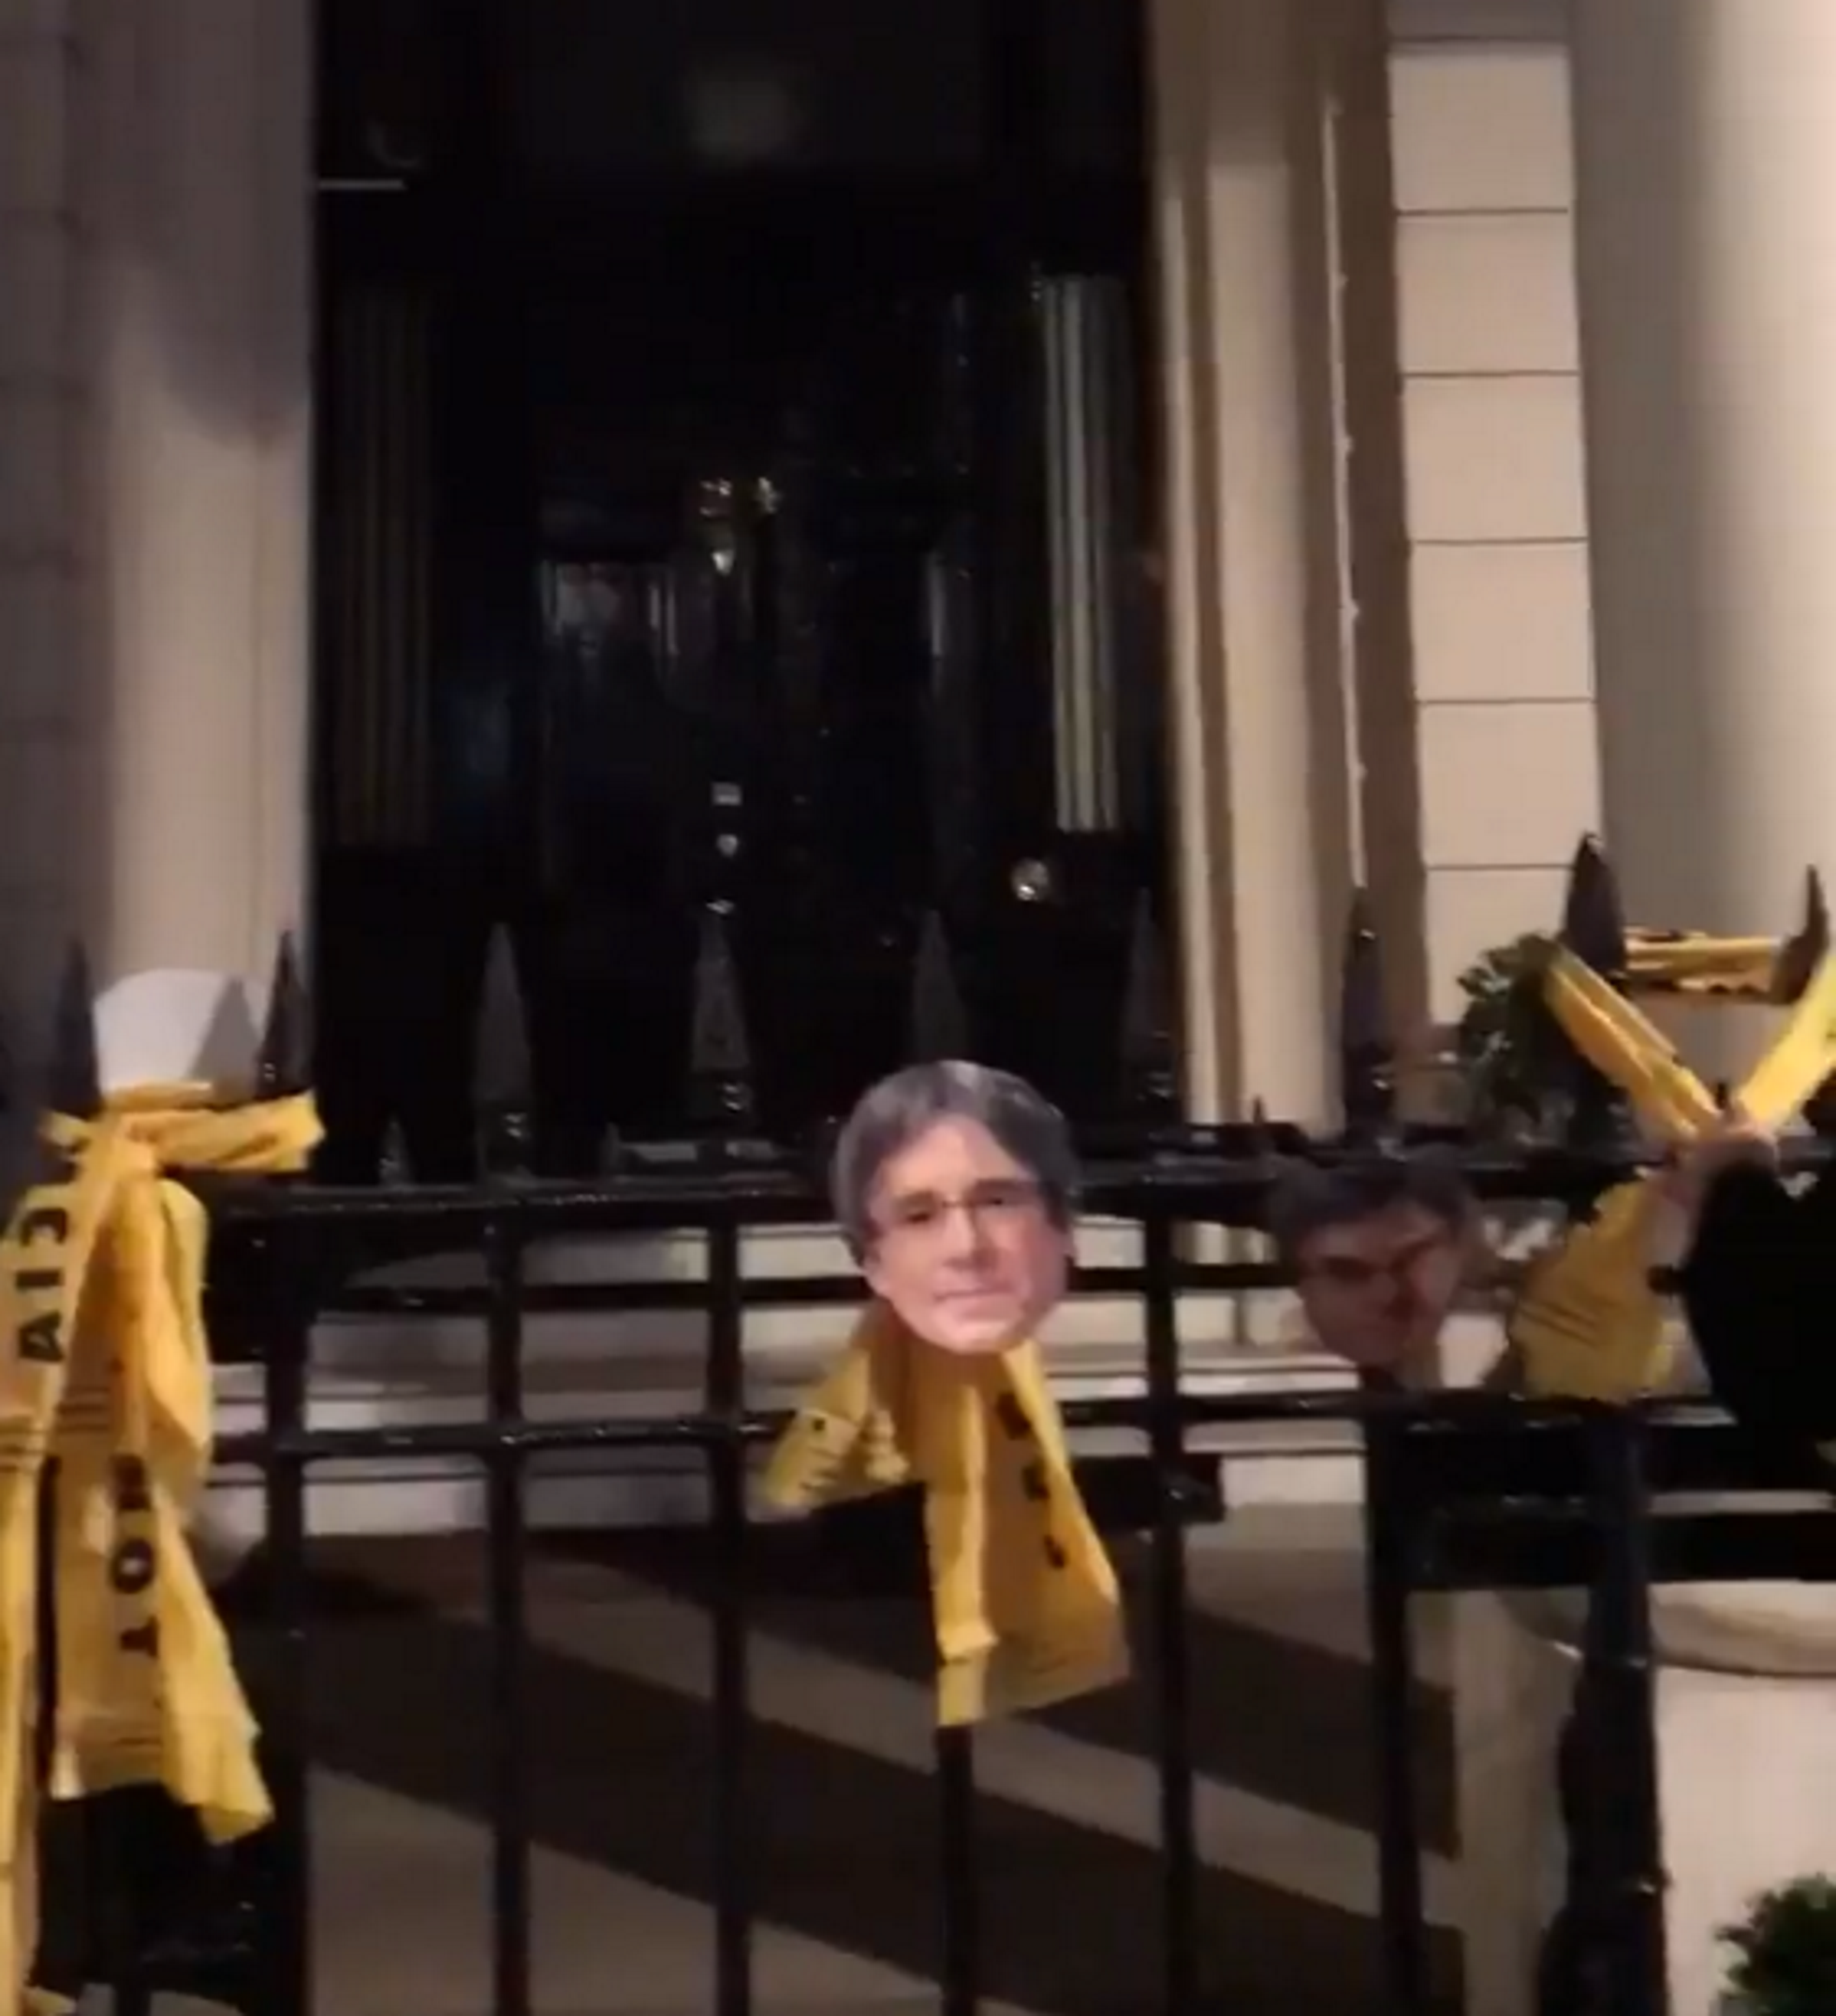 Acción en la embajada de España en Londres: lazos amarillos y caras de Puigdemont